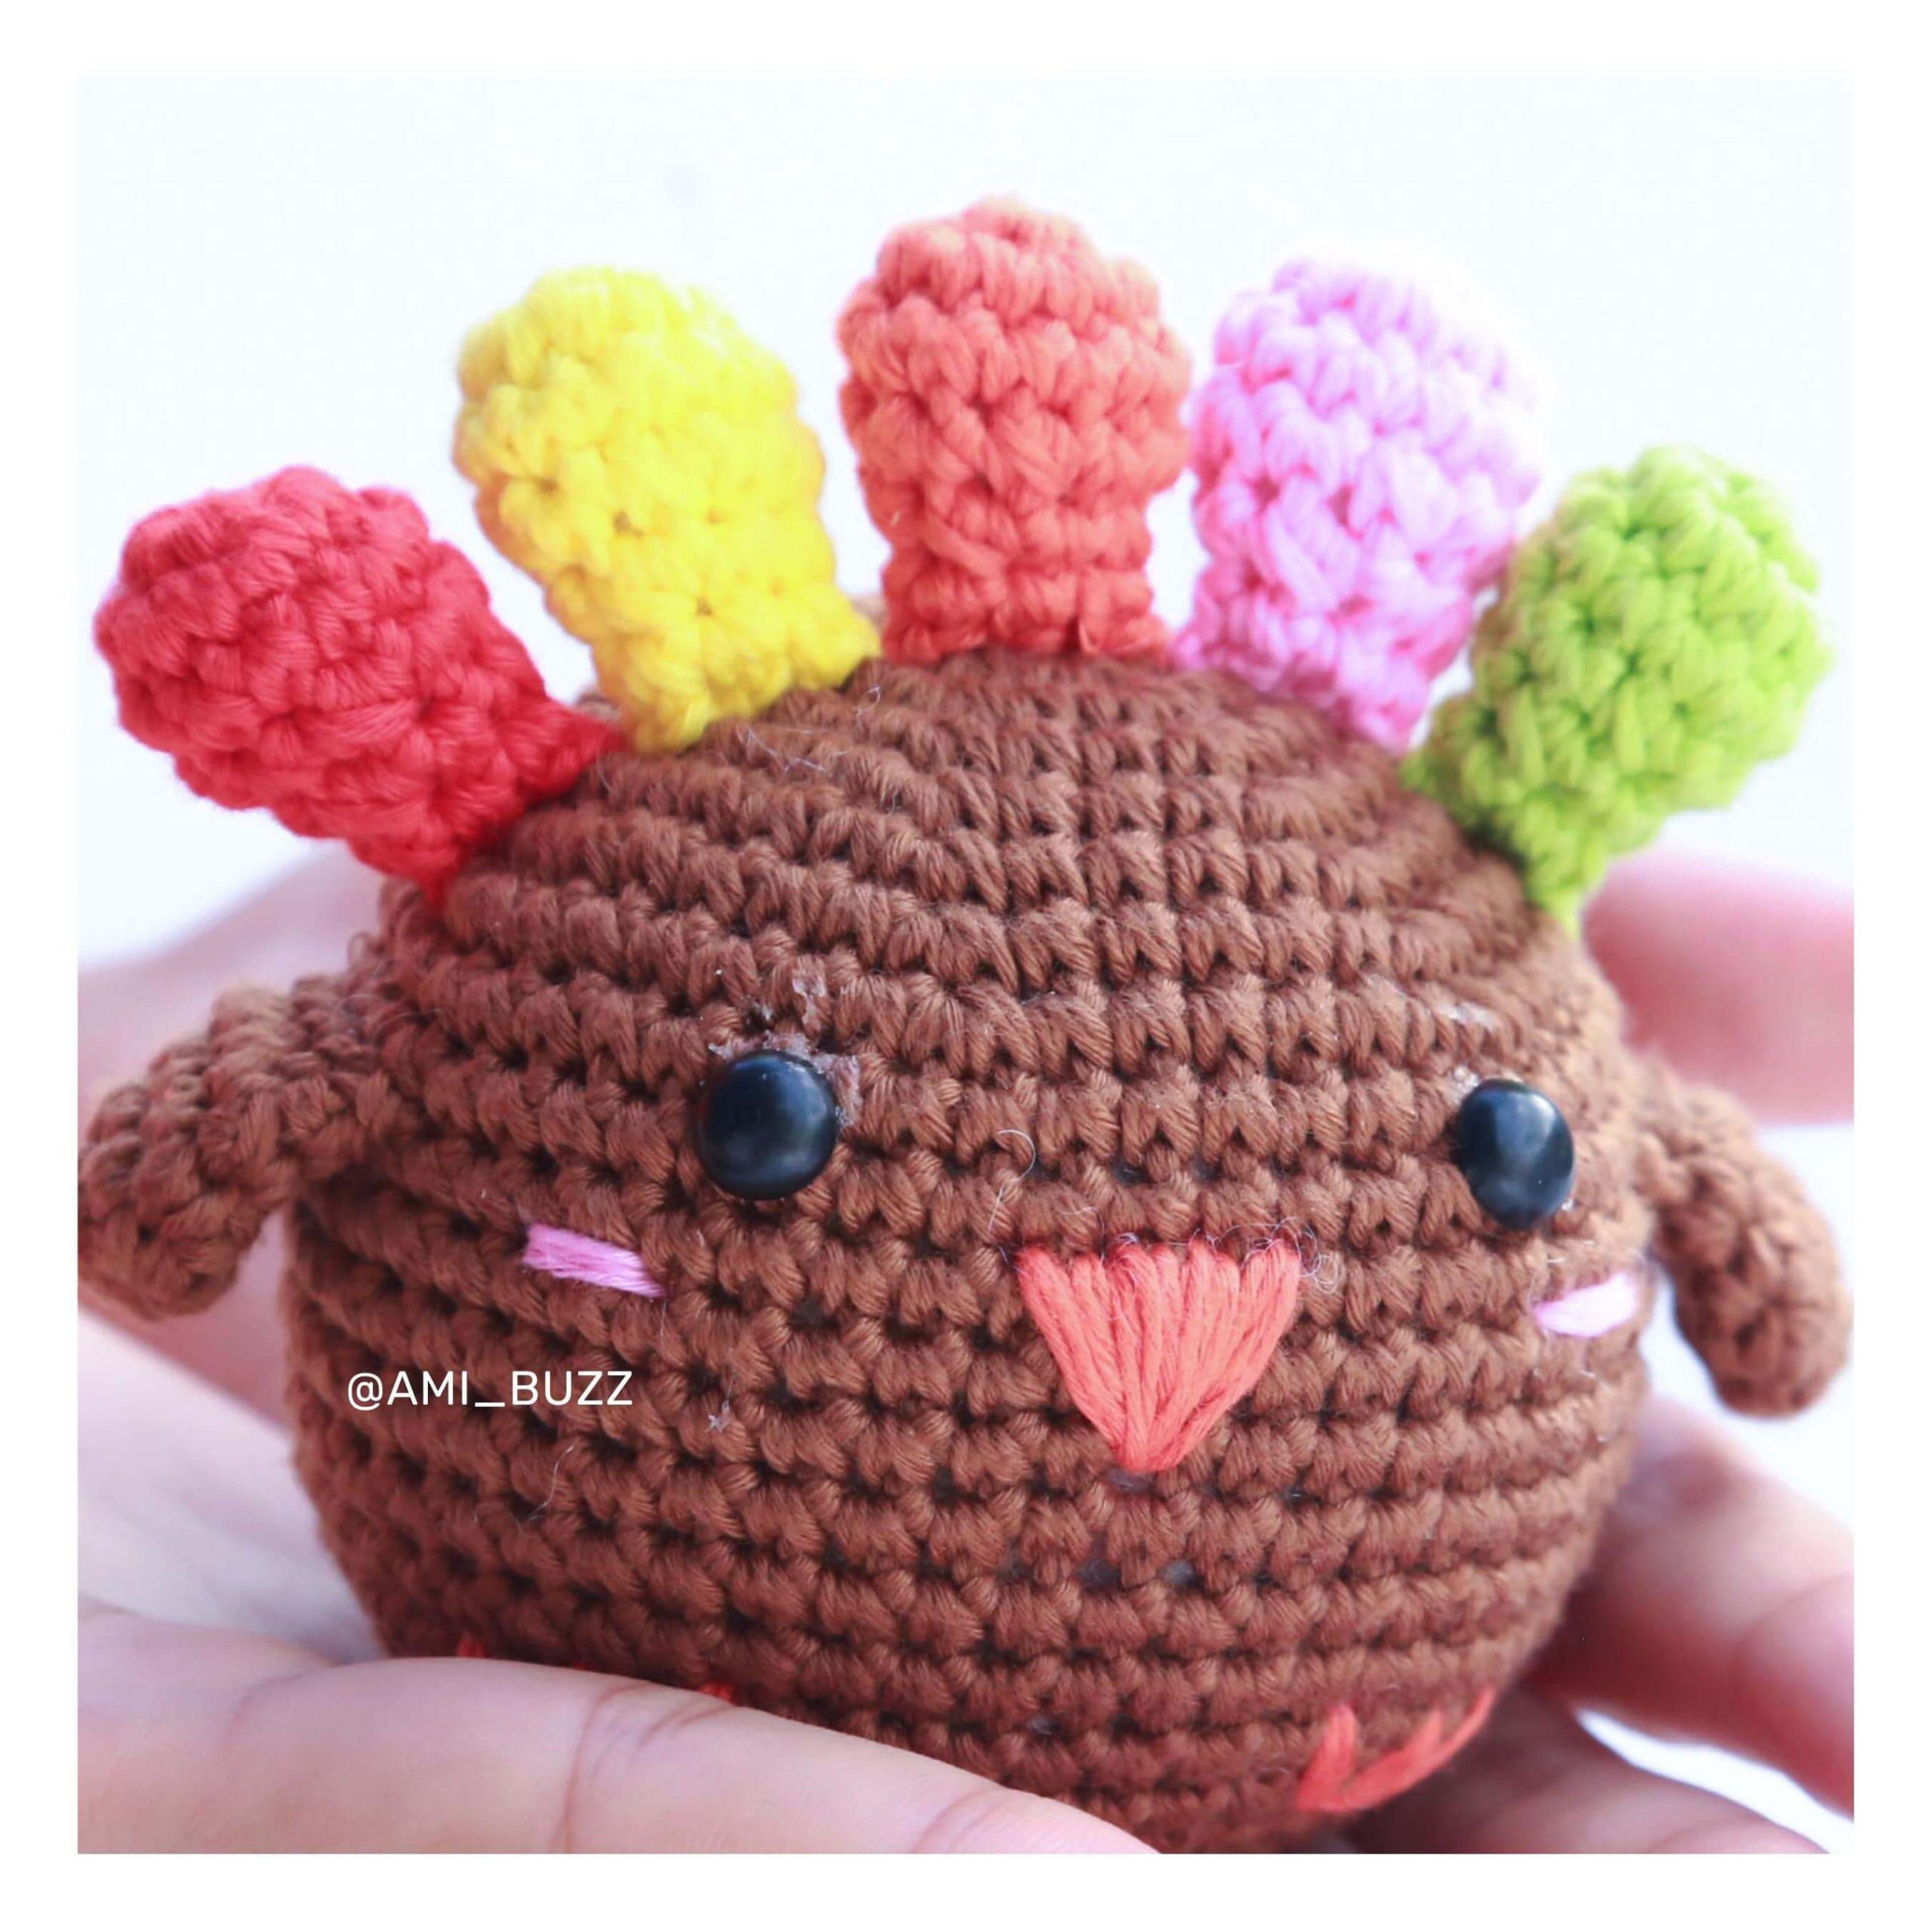 chicken-amigurumi-crochet-pattern-amibuzz (8)